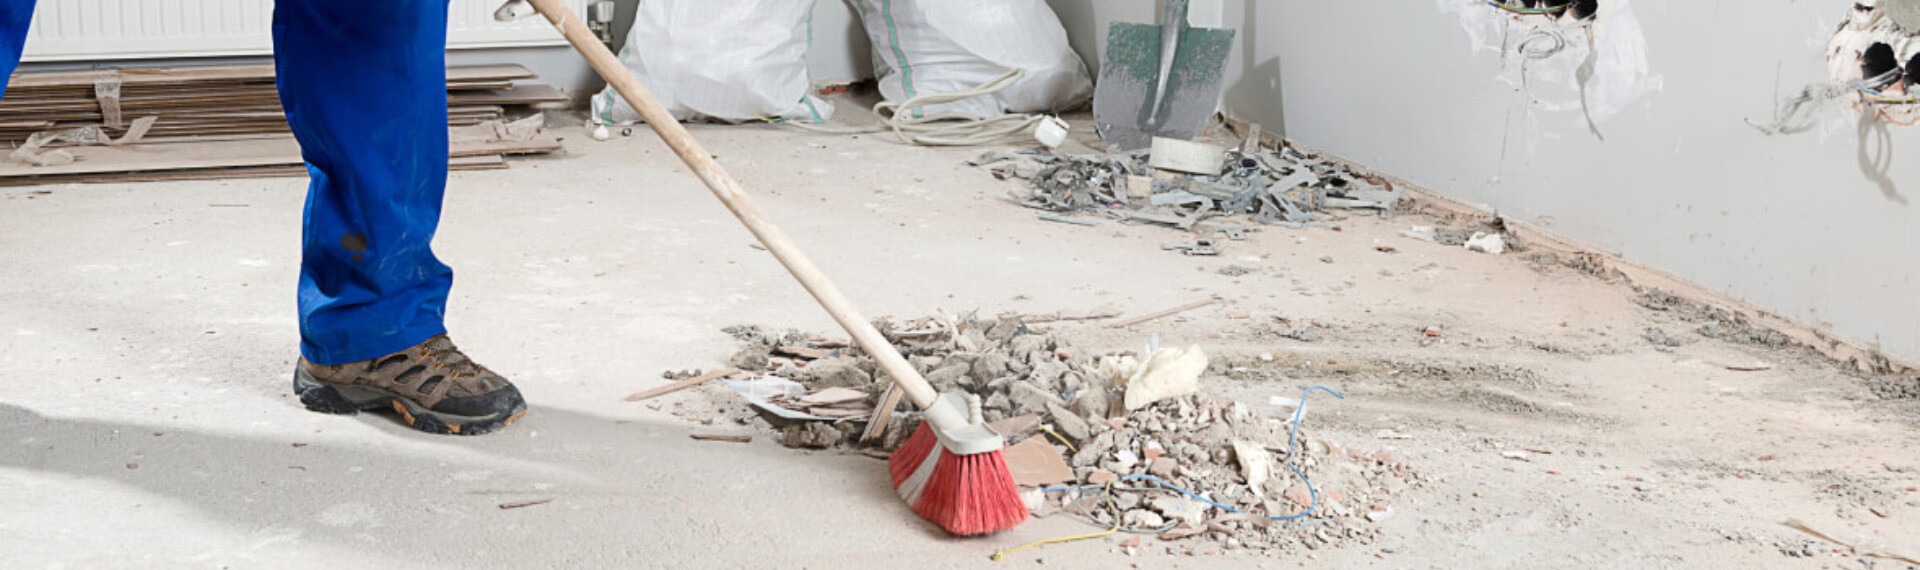 Sprzątanie domu po remoncie – jak to zrobić szybko i skutecznie?